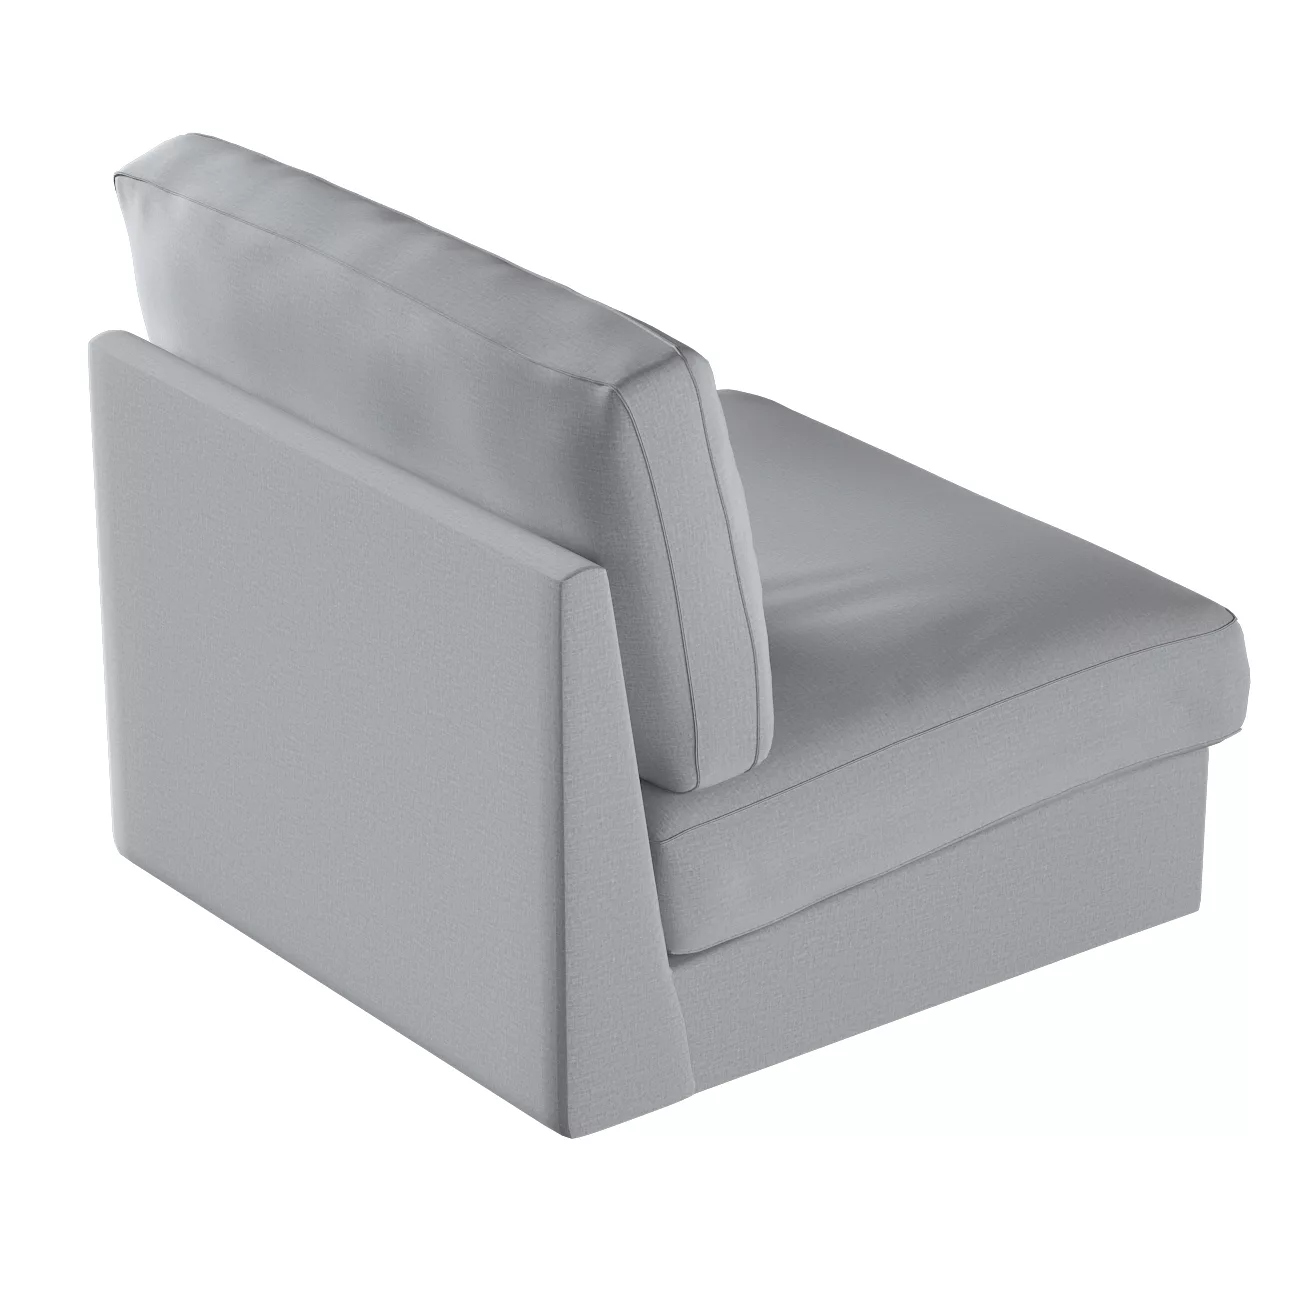 Bezug für Kivik Sessel nicht ausklappbar, dunklegrau, Bezug für Sessel Kivi günstig online kaufen